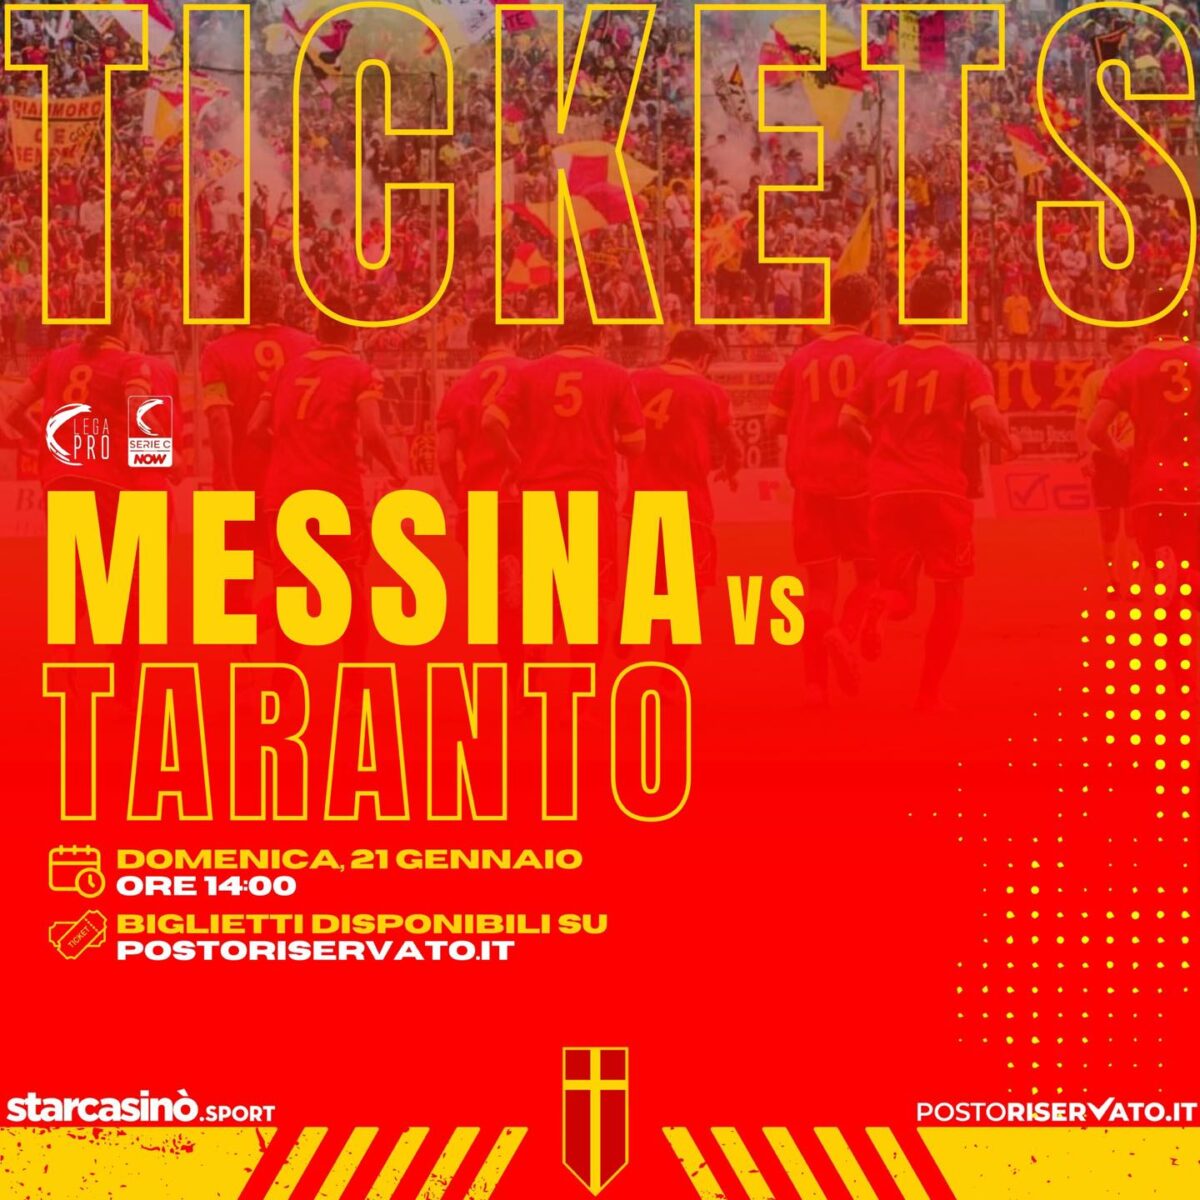 ACR Messina annuncia l'apertura della prevendita per Messina-Taranto.